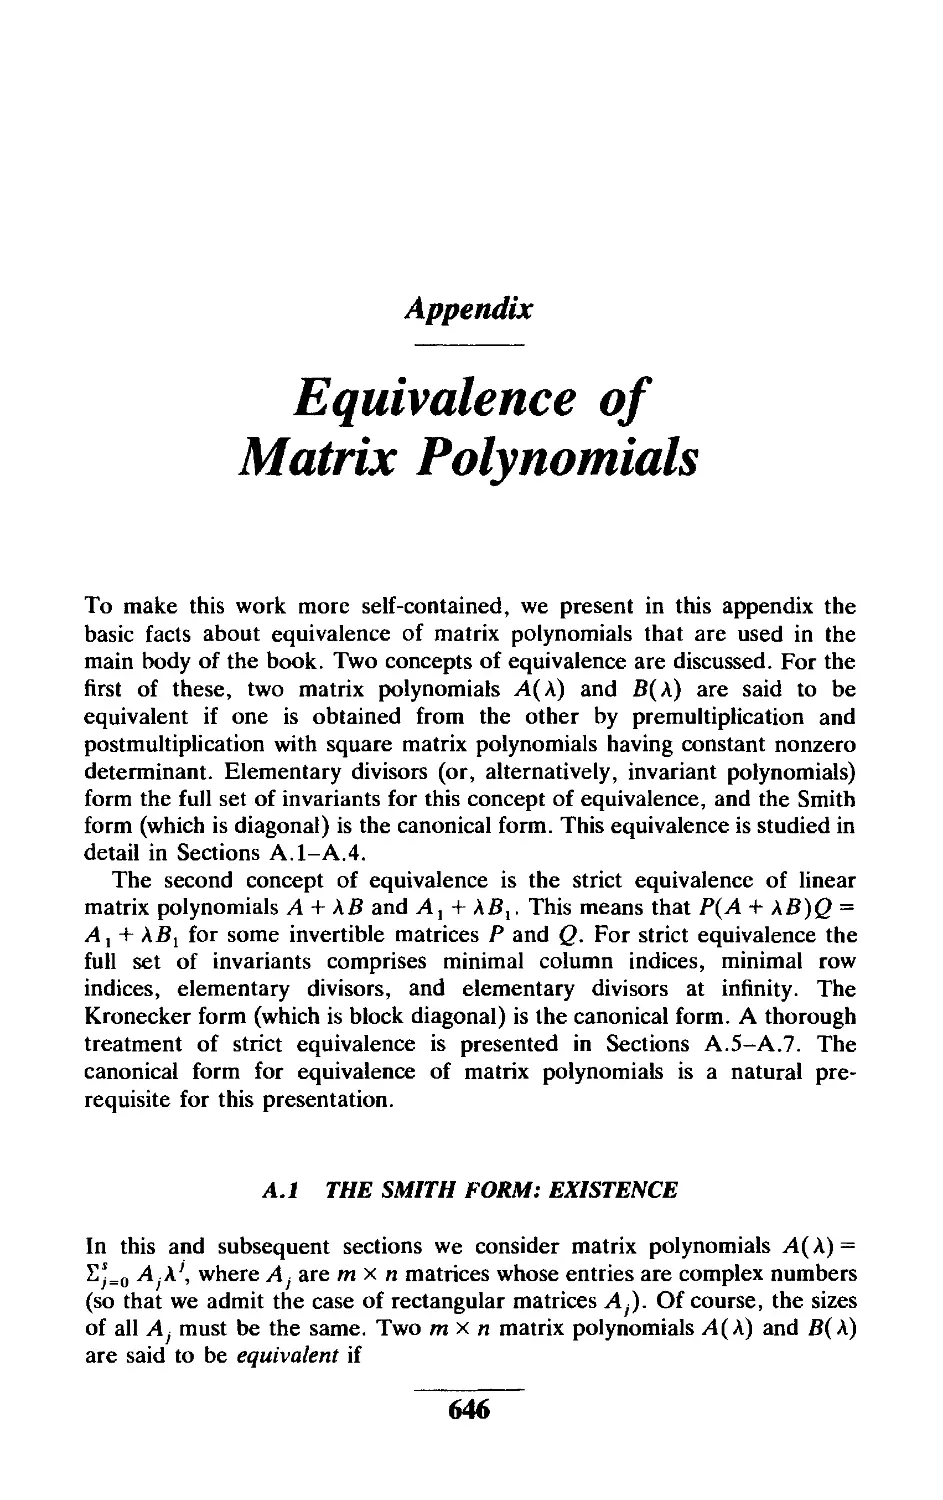 Appendix Equivalence of Matrix Polynomials